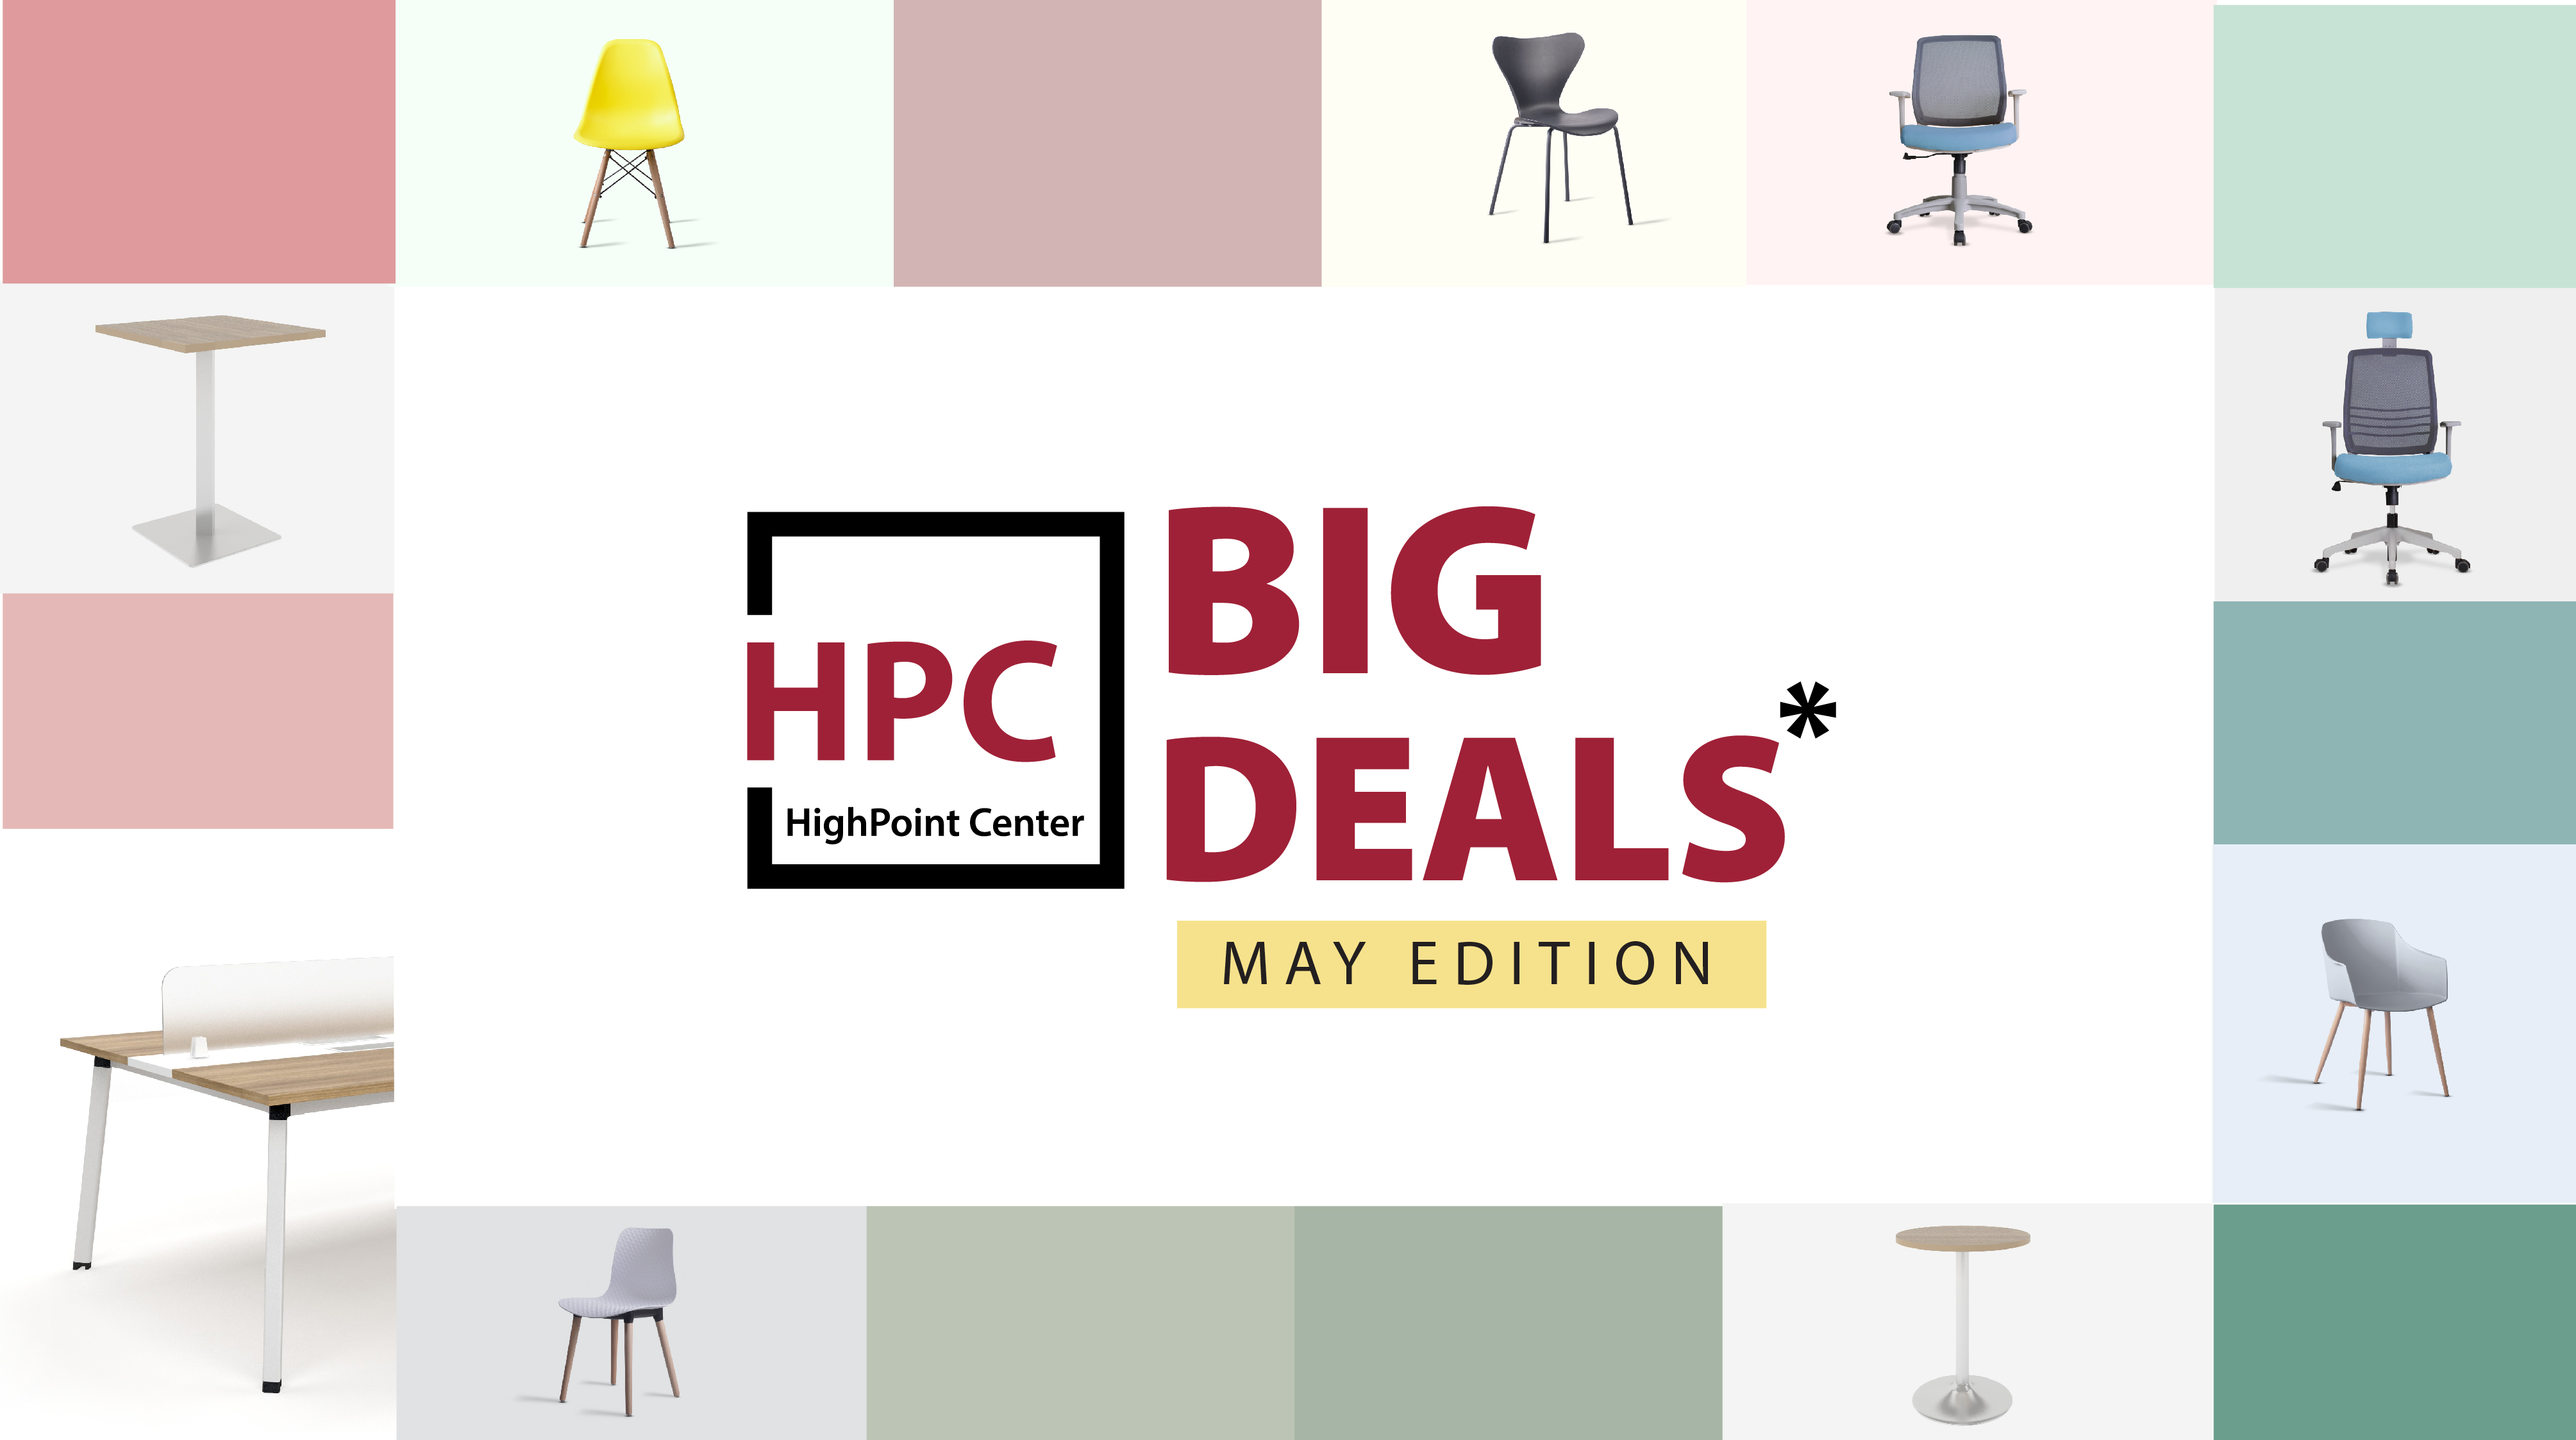 HPC Big Deals